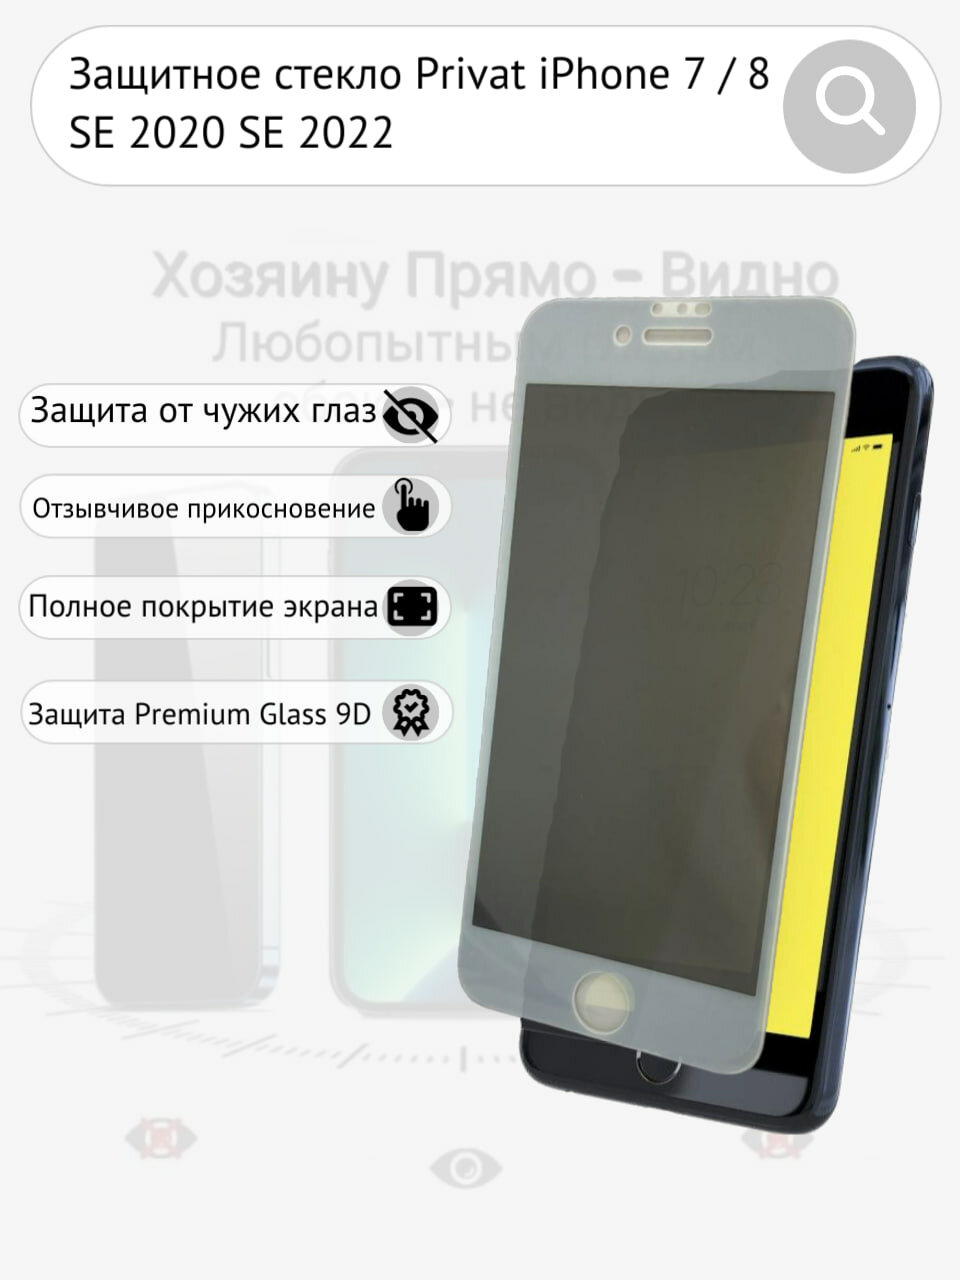 Защитное стекло iPhone 7 8 SE 2020 2022 антишпион Privat олеофобное покрытие белая рамка